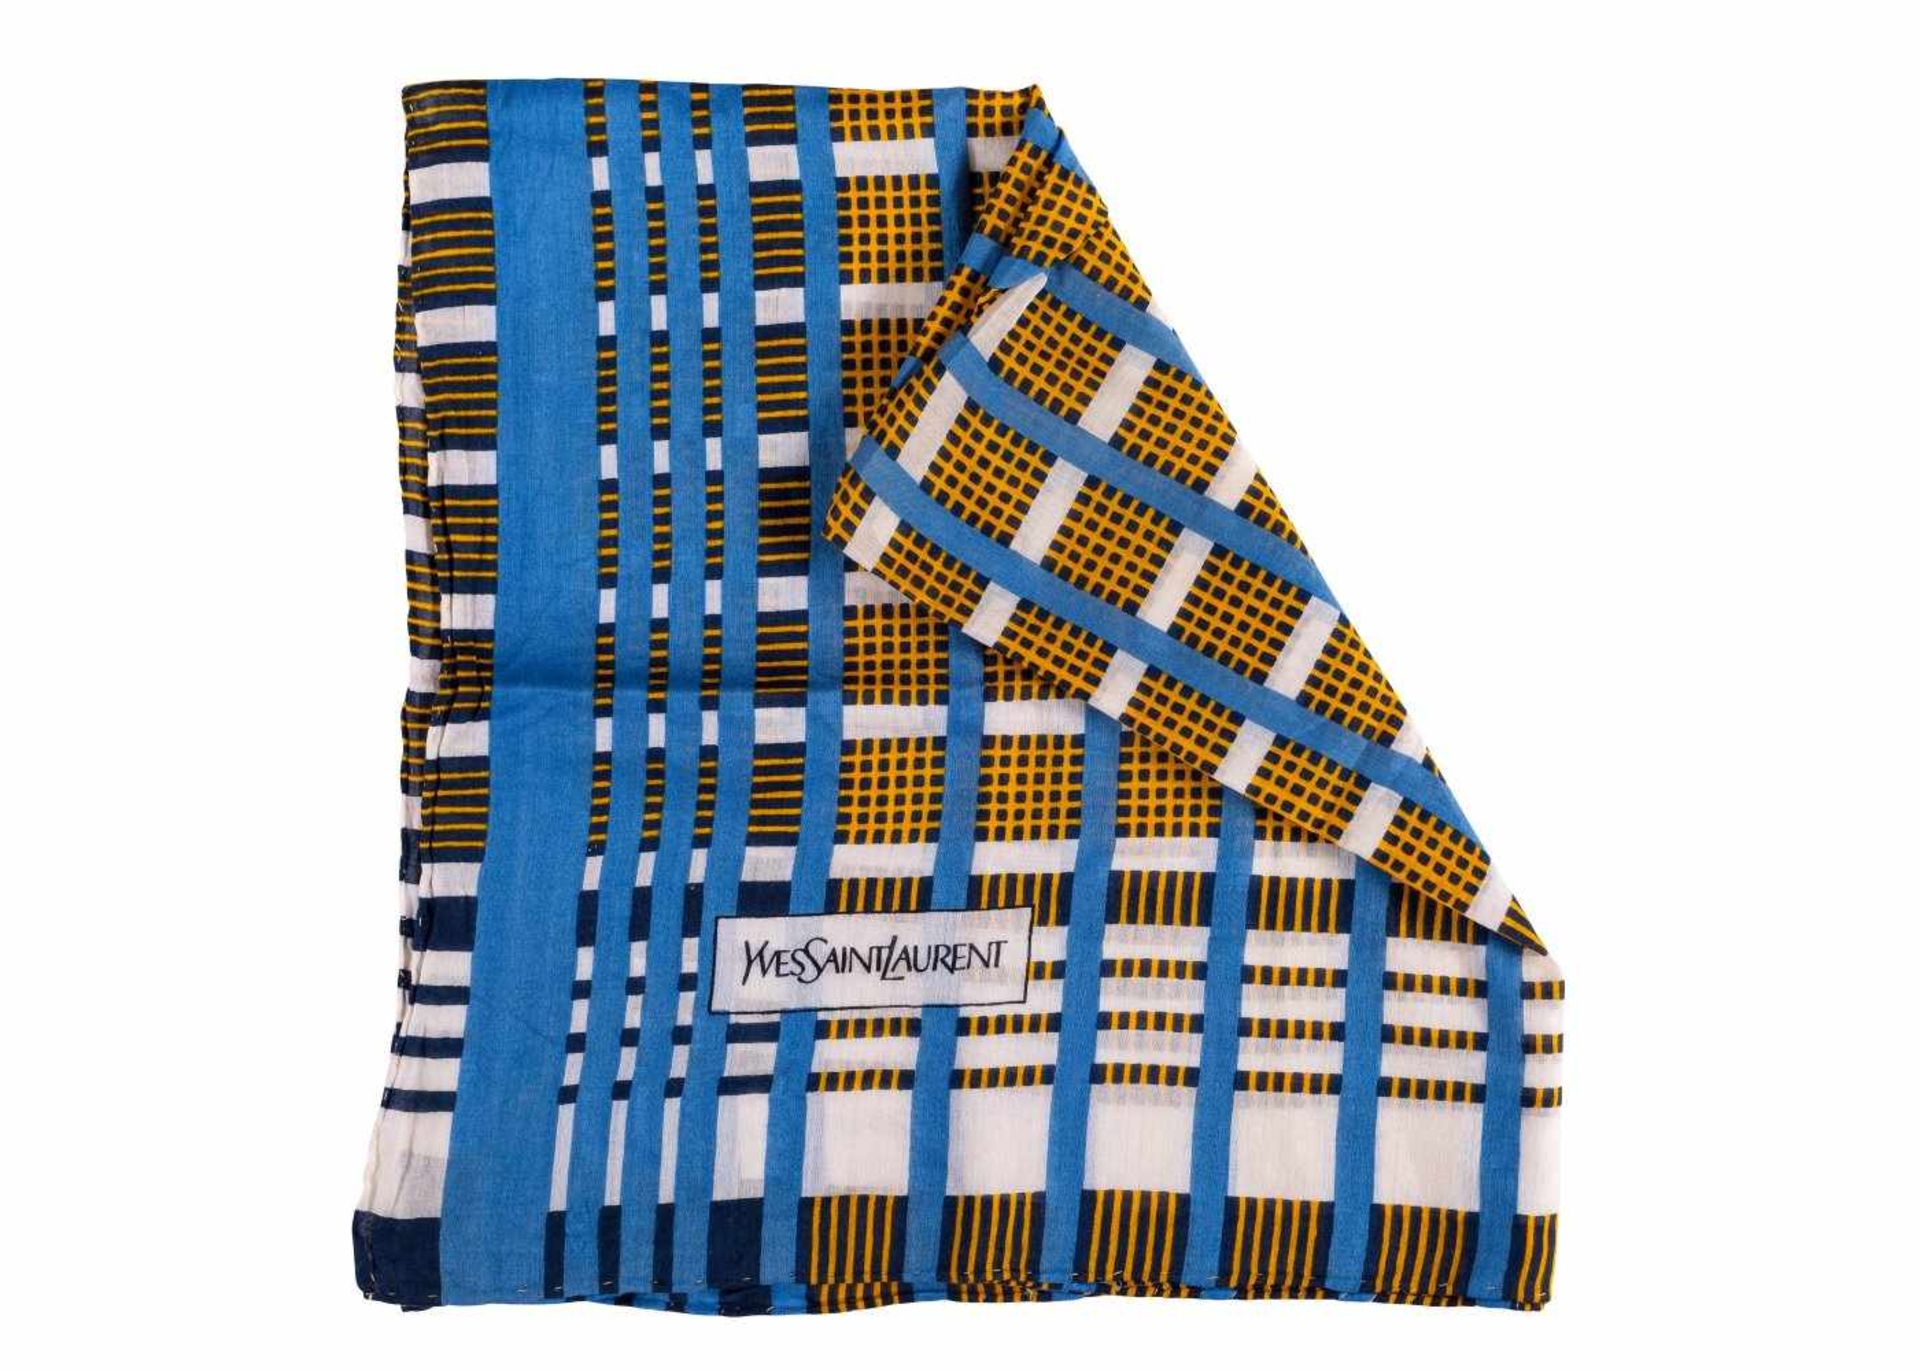 HalstuchHersteller: Yves Saint Laurent. Baumwolle. Gitter- und Streifenmuster in Blau, Gelb und